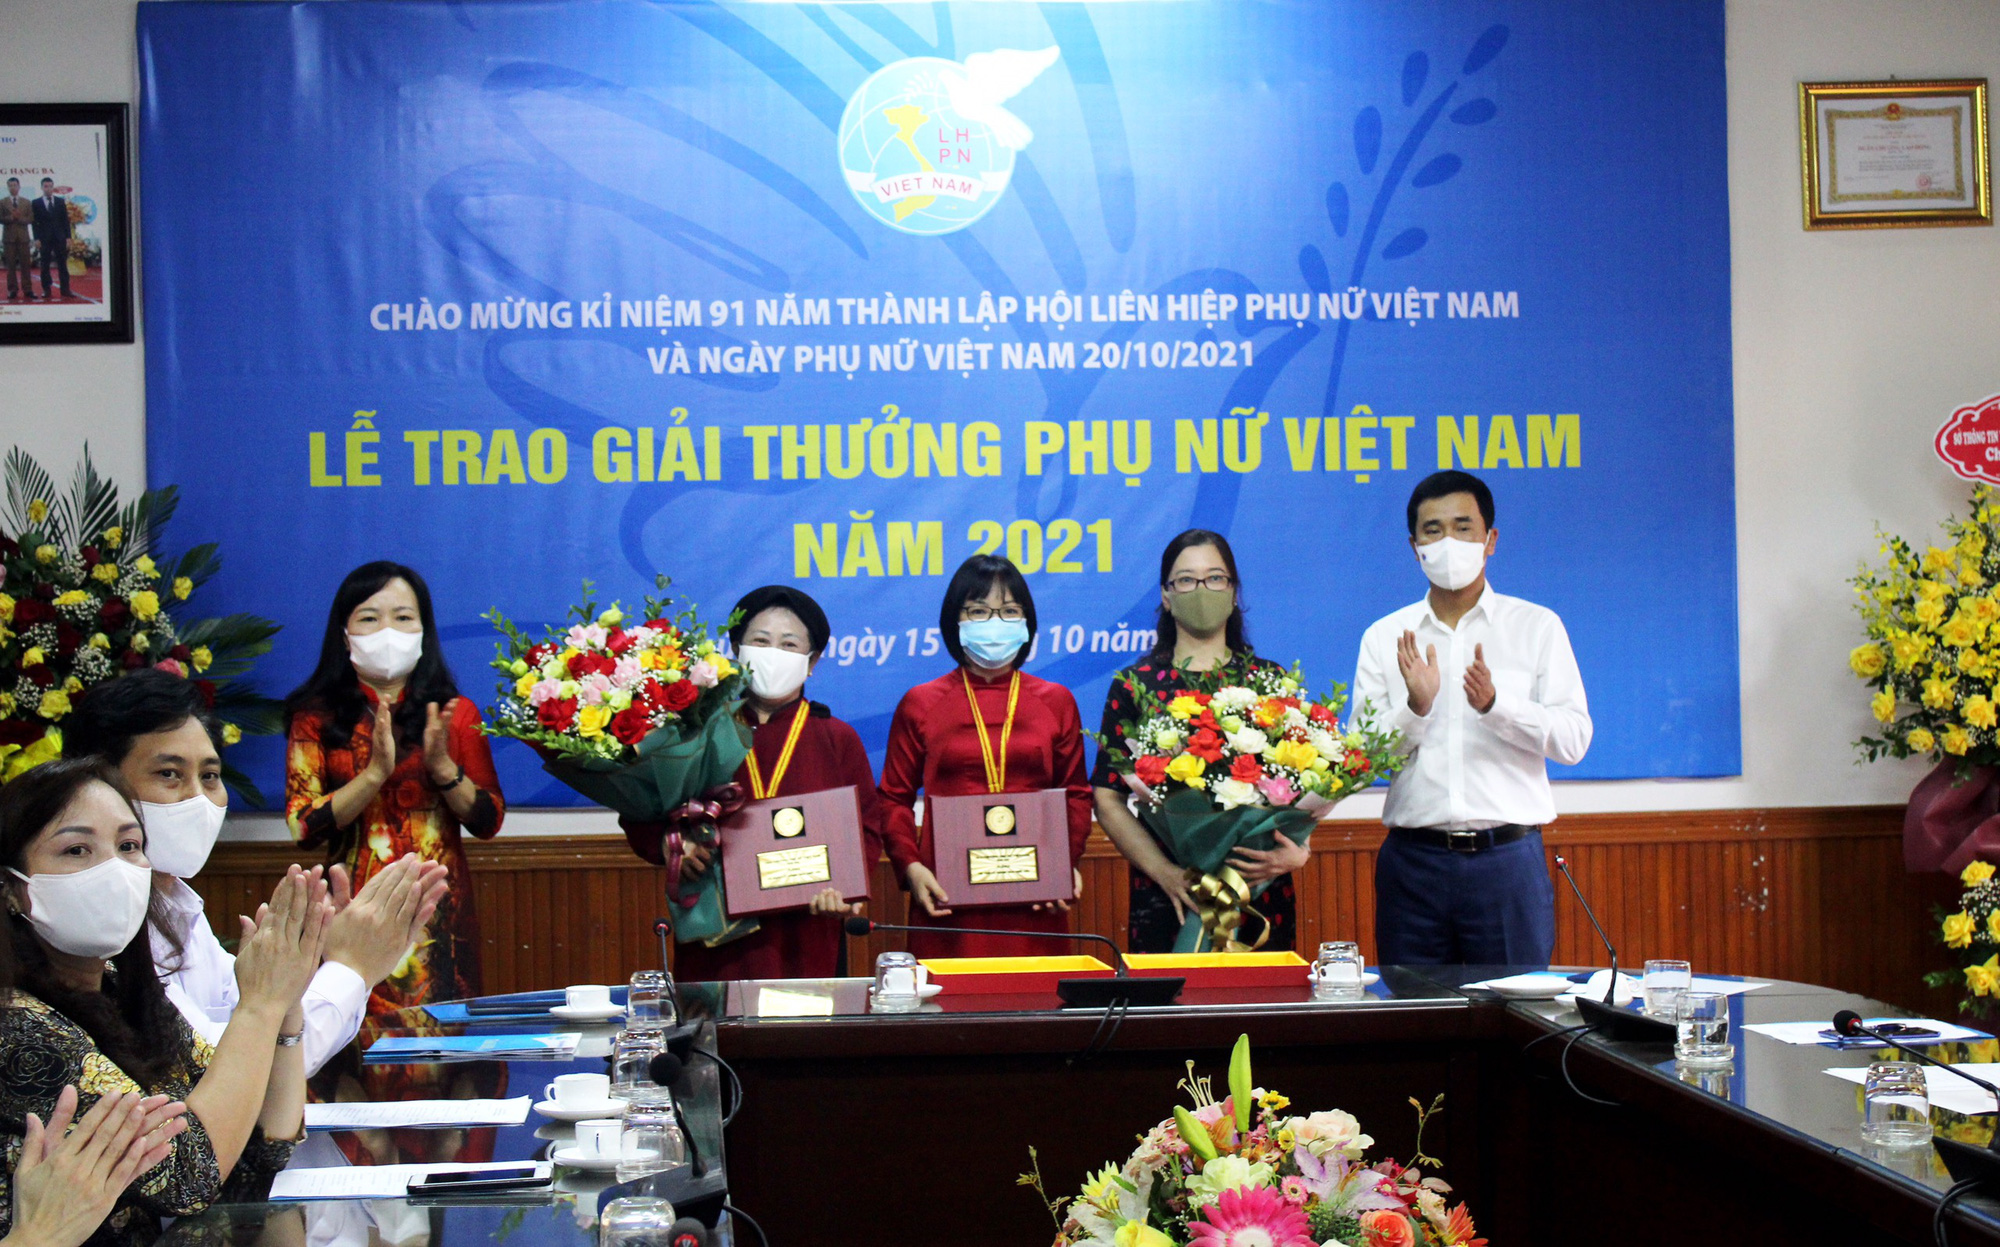 Bảo tồn di sản văn hóa hát Xoan, nghệ nhân Phú Thọ được trao tặng giải thưởng PNVN  - Ảnh 5.